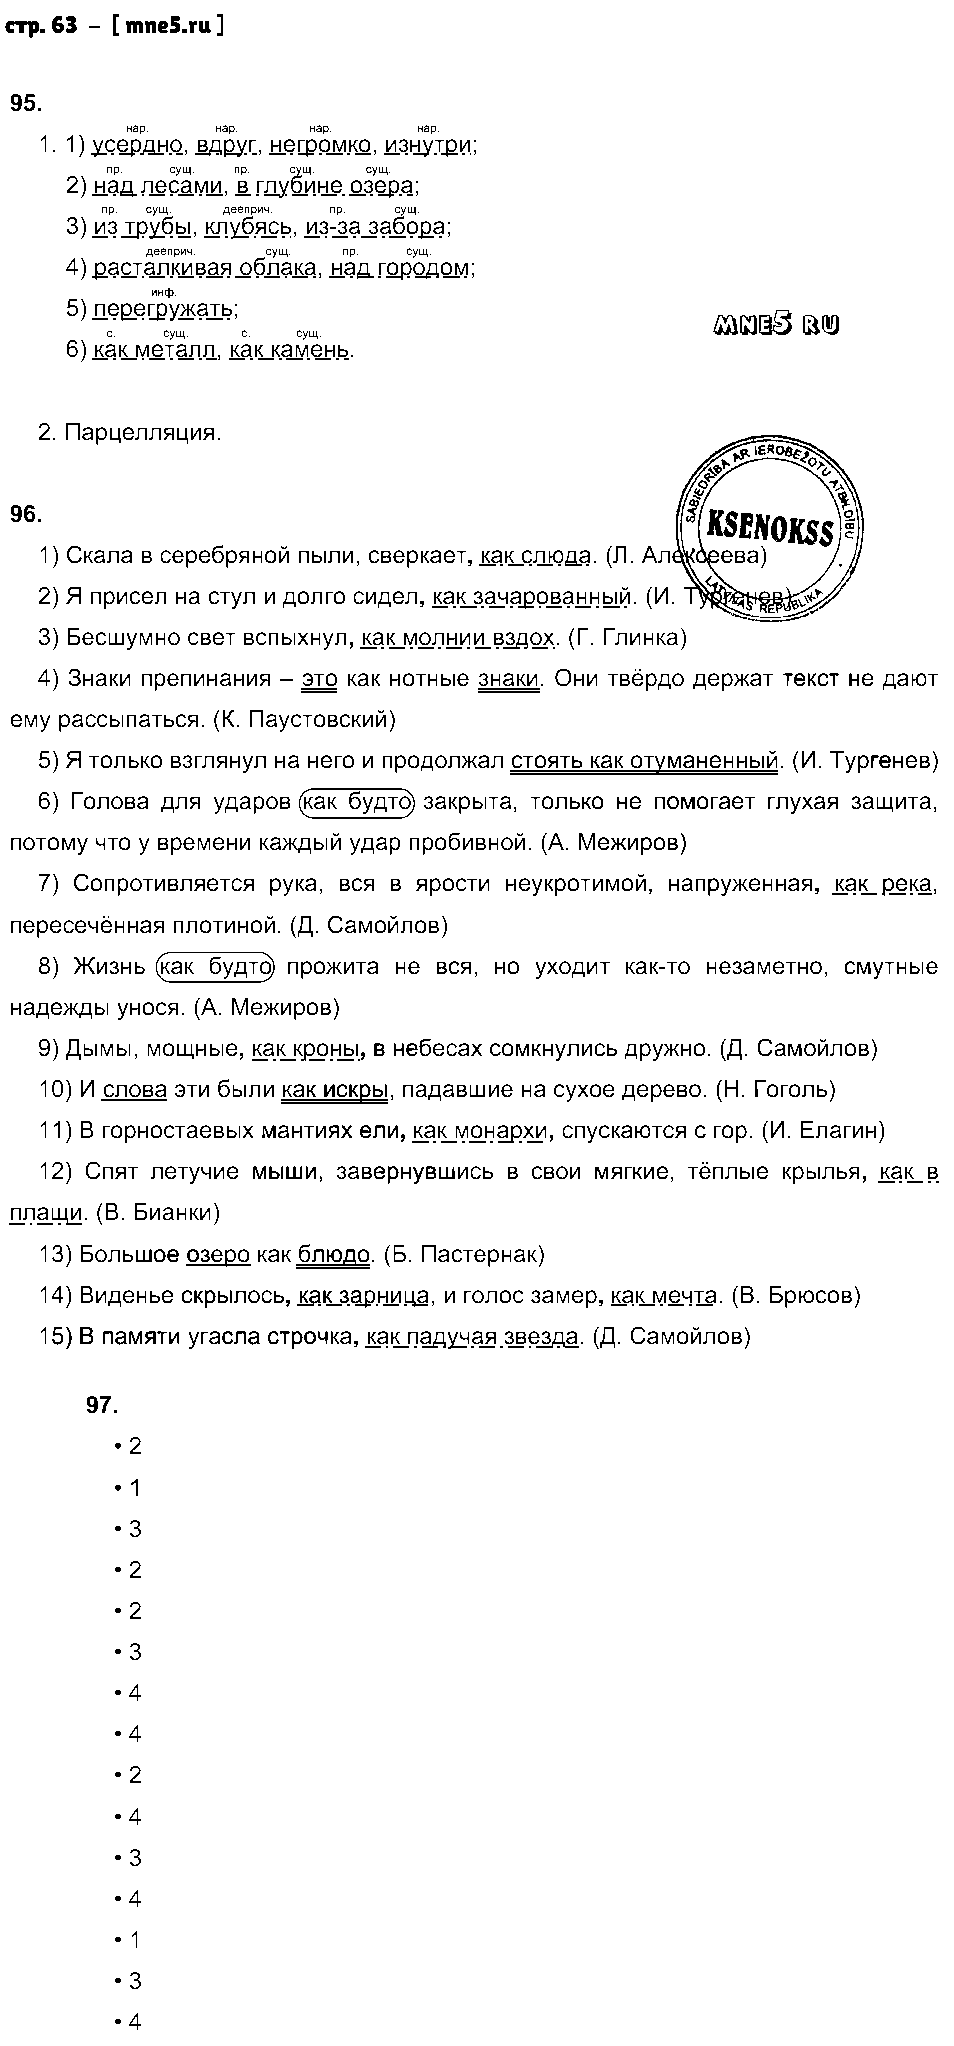 ГДЗ Русский язык 8 класс - стр. 63